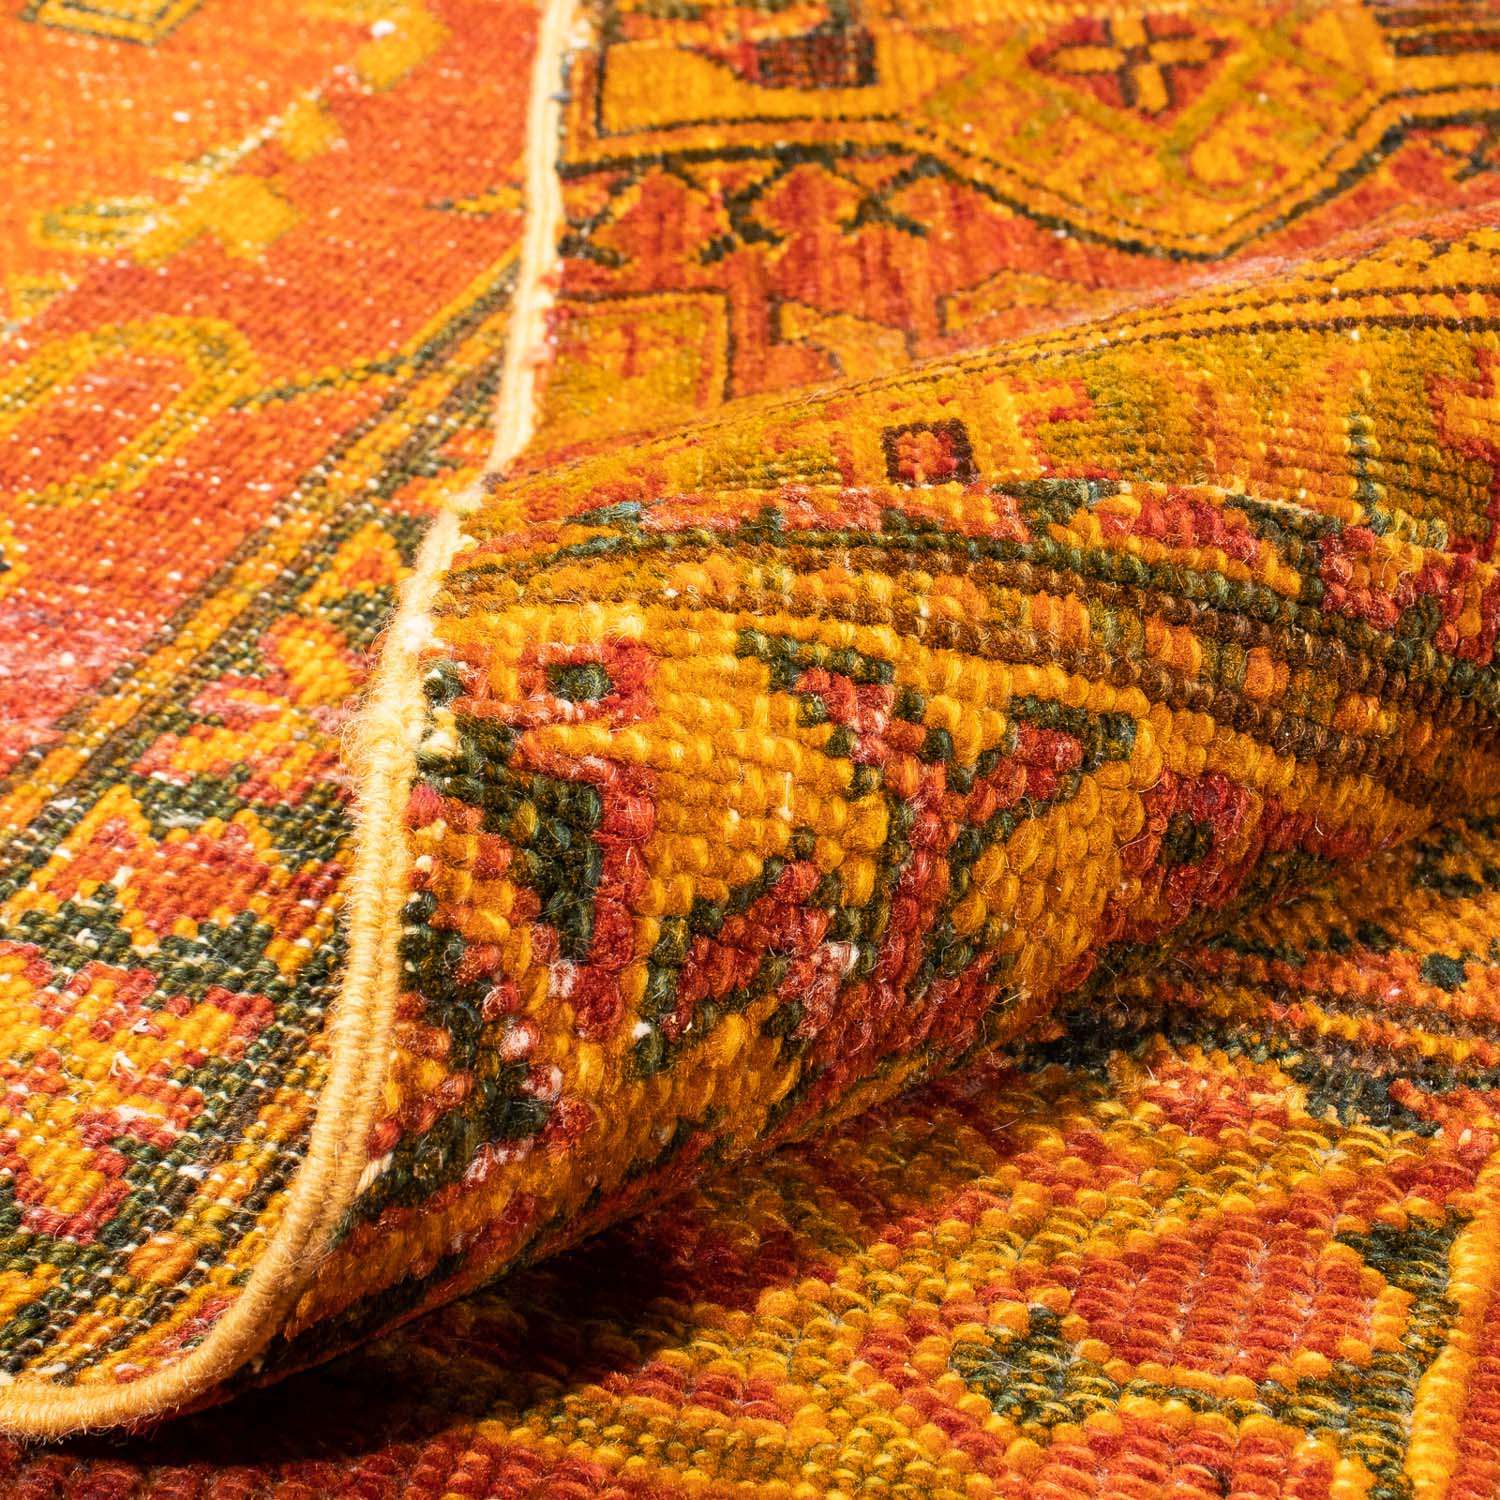 Patchwork tapijt - 295 x 239 cm - bruin